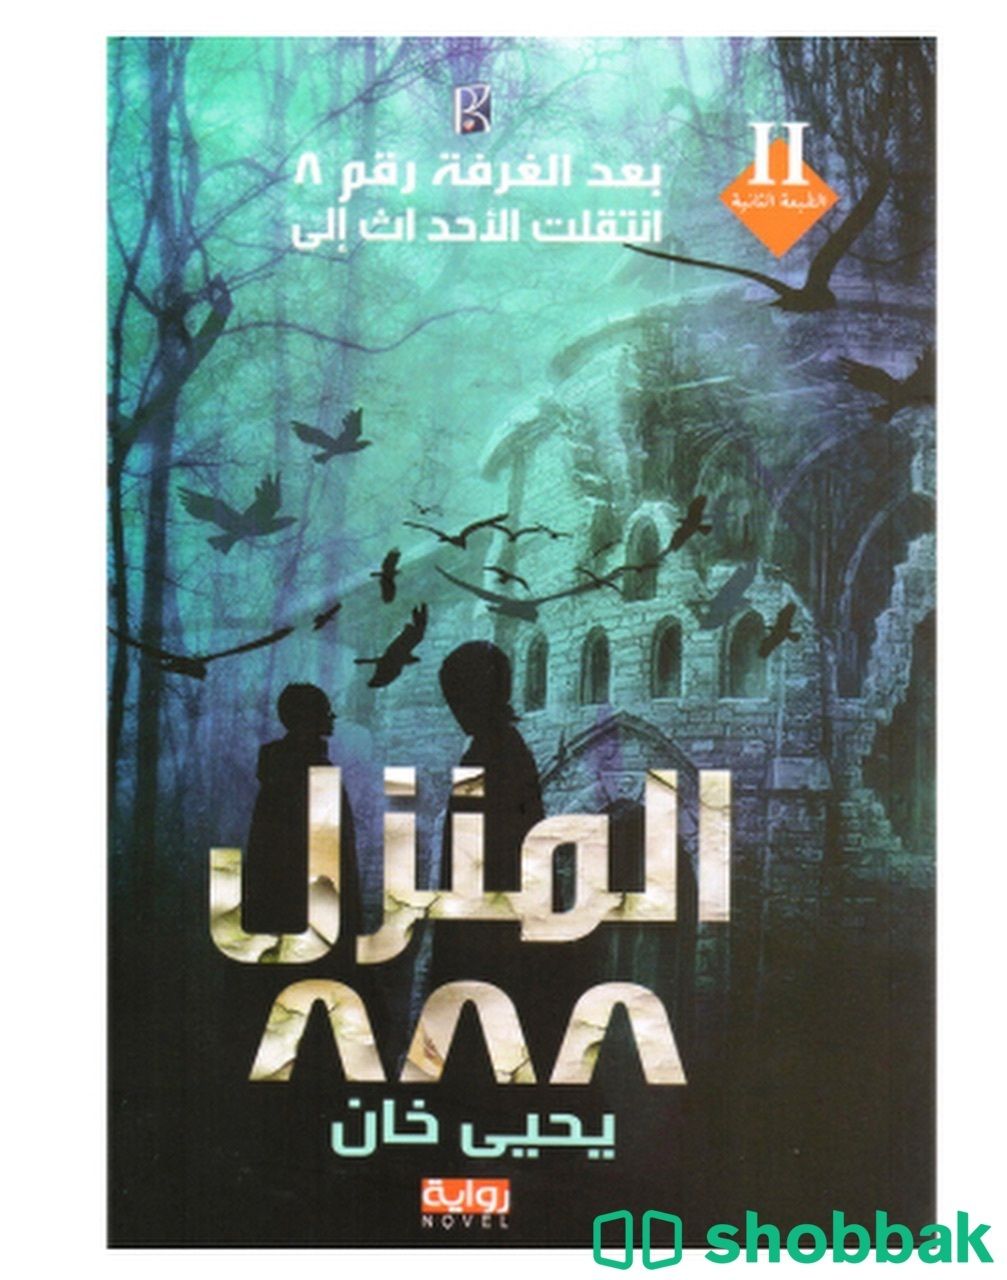 كتاب المنزل ٨٨٨ للكاتب يحيى خان  Shobbak Saudi Arabia